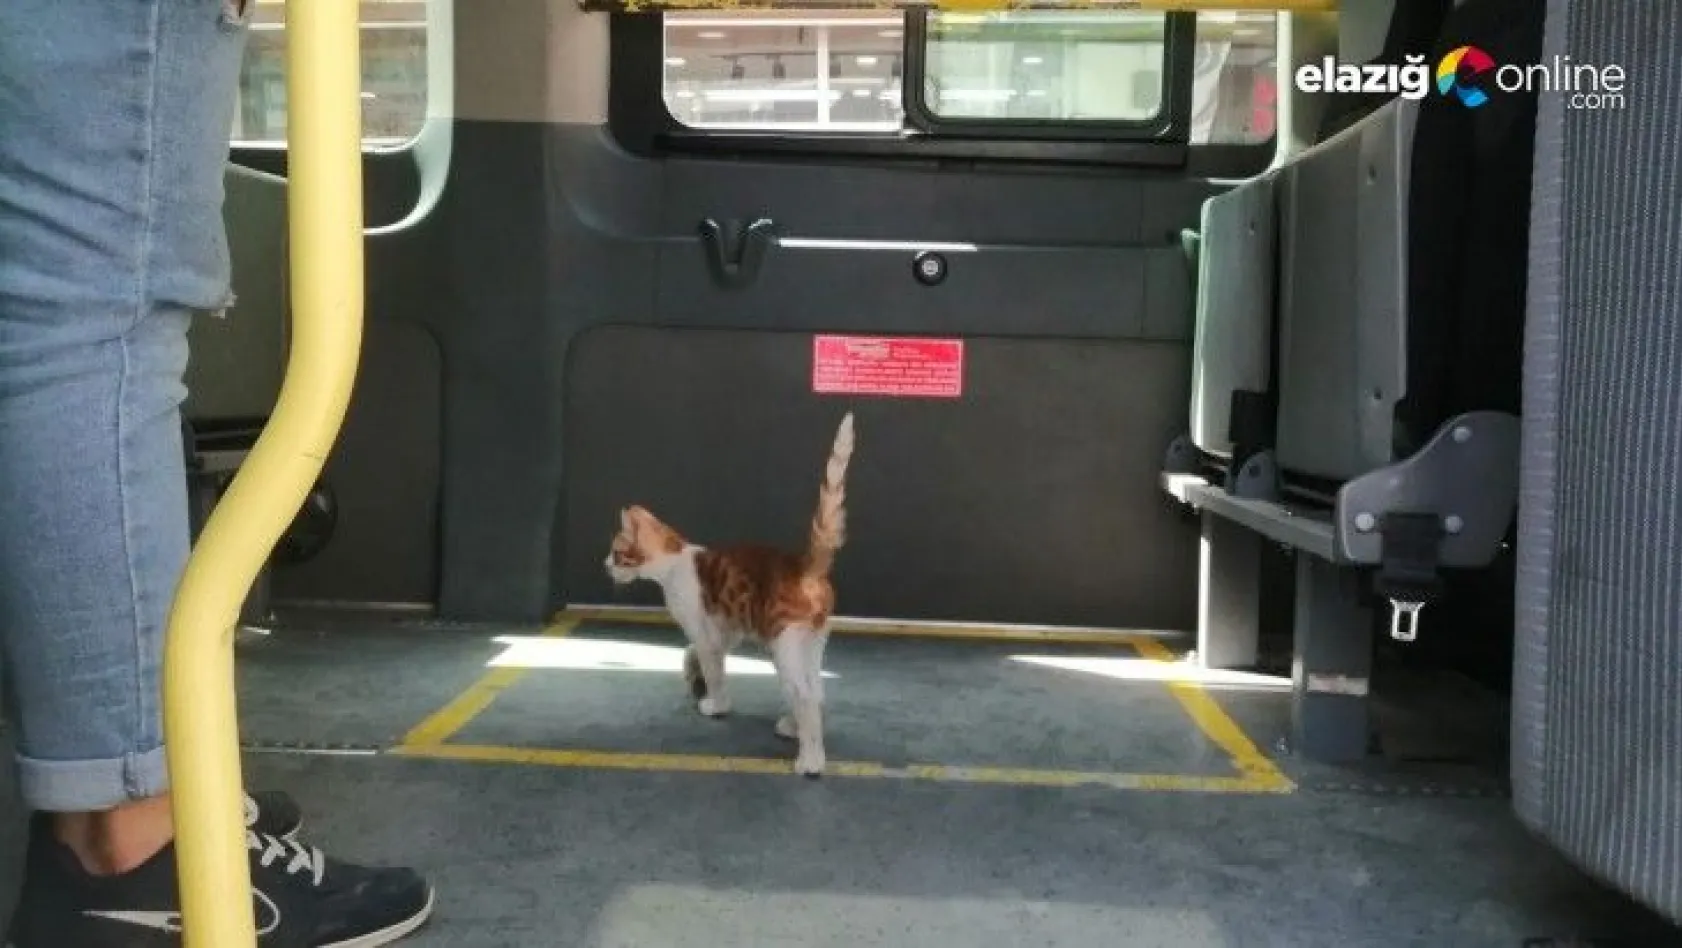 Yolcu gibi minibüse binen kedi, çarşı merkezine kadar yolculuk yaptı